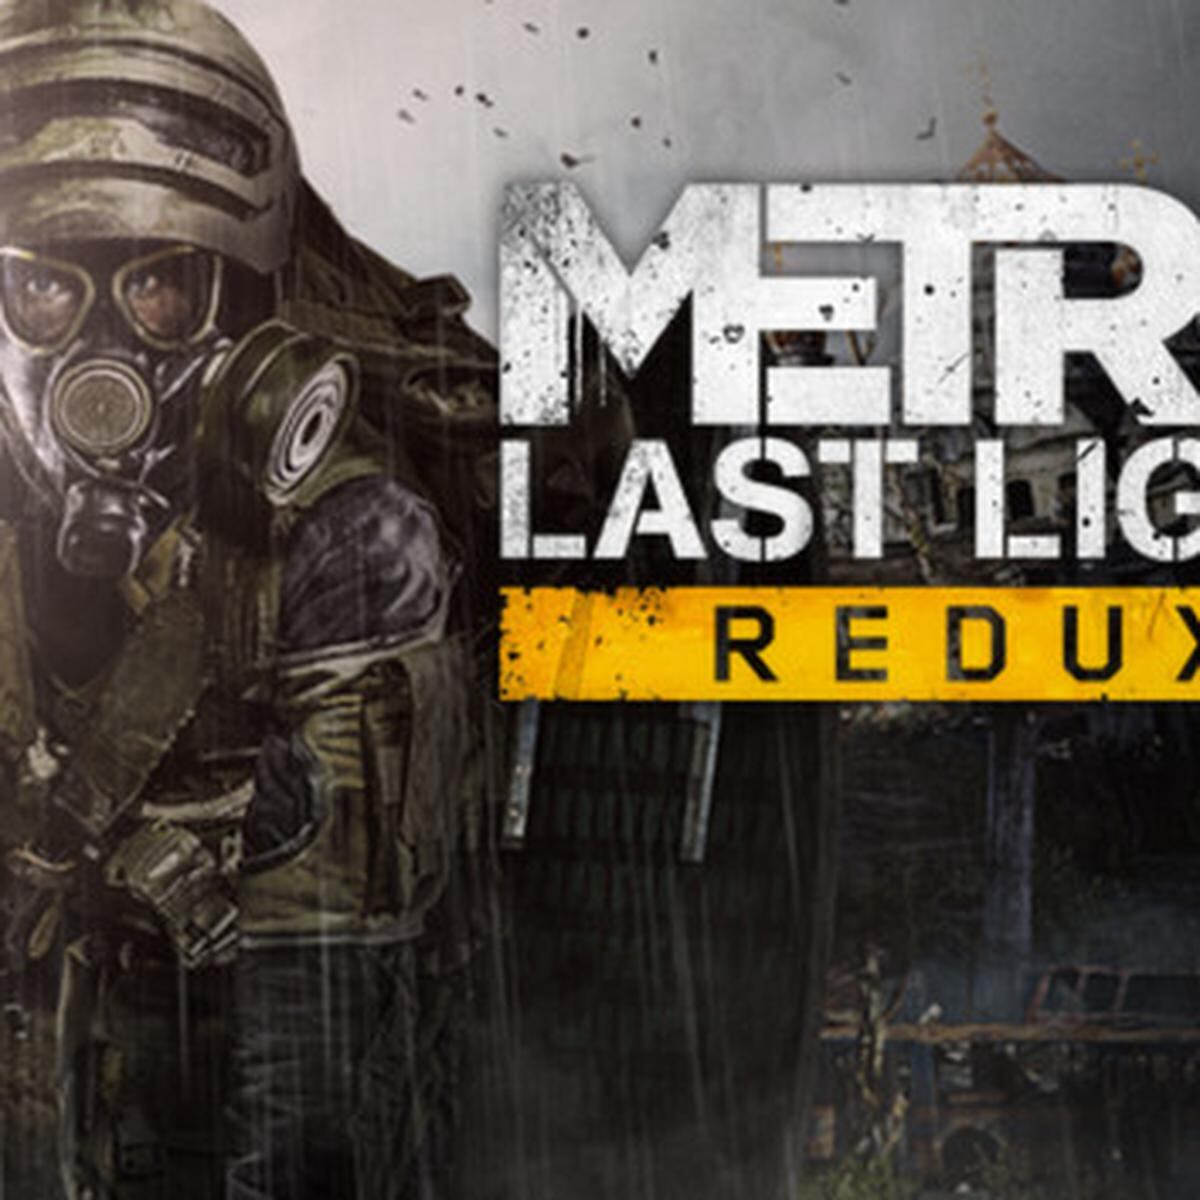 Juegos Gratis Descarga Metro Last Light Redux Y For The King Por Tiempo Limitado En Epic Games Store Depor Play Depor